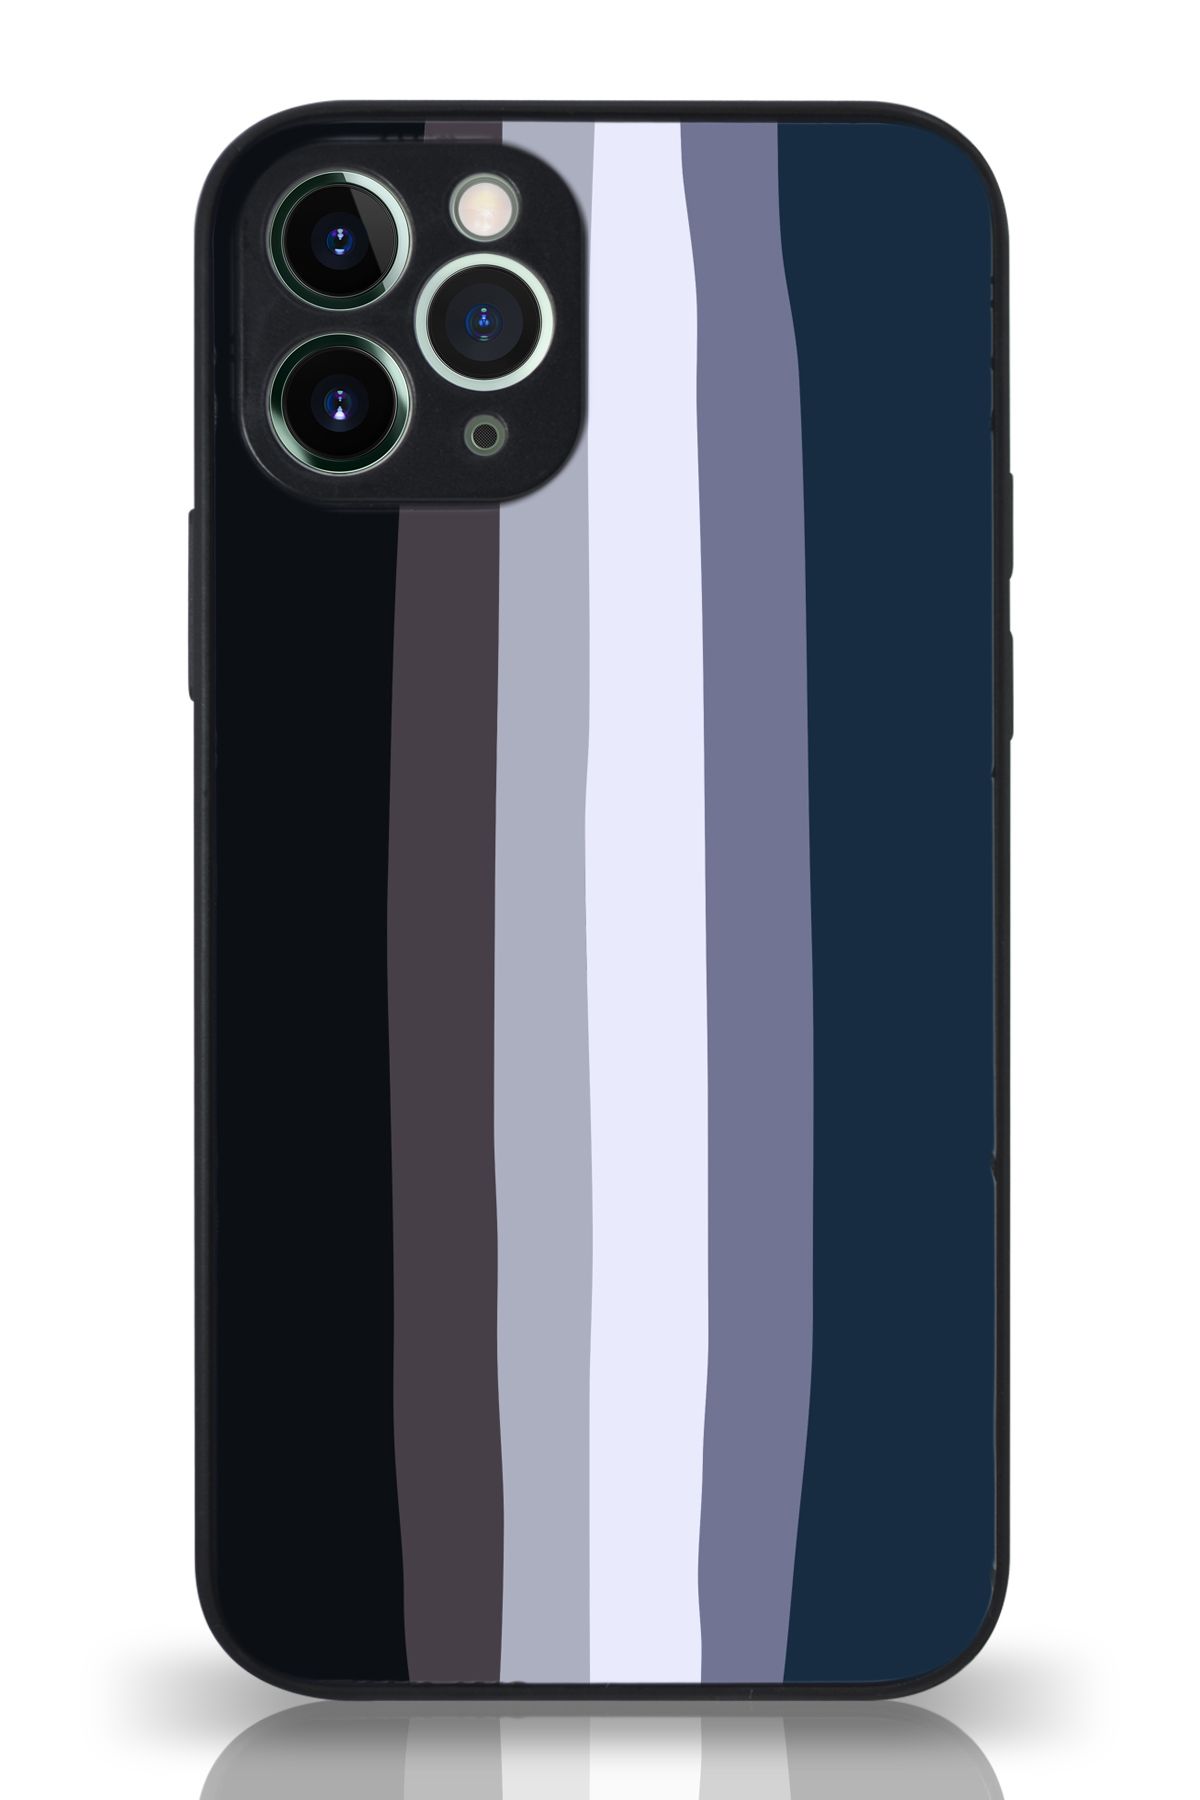 PrintiFy Apple iPhone 11 Pro Max Kamera Korumalı Mavi Gökkuşağı Desenli Cam Kapak Siyah